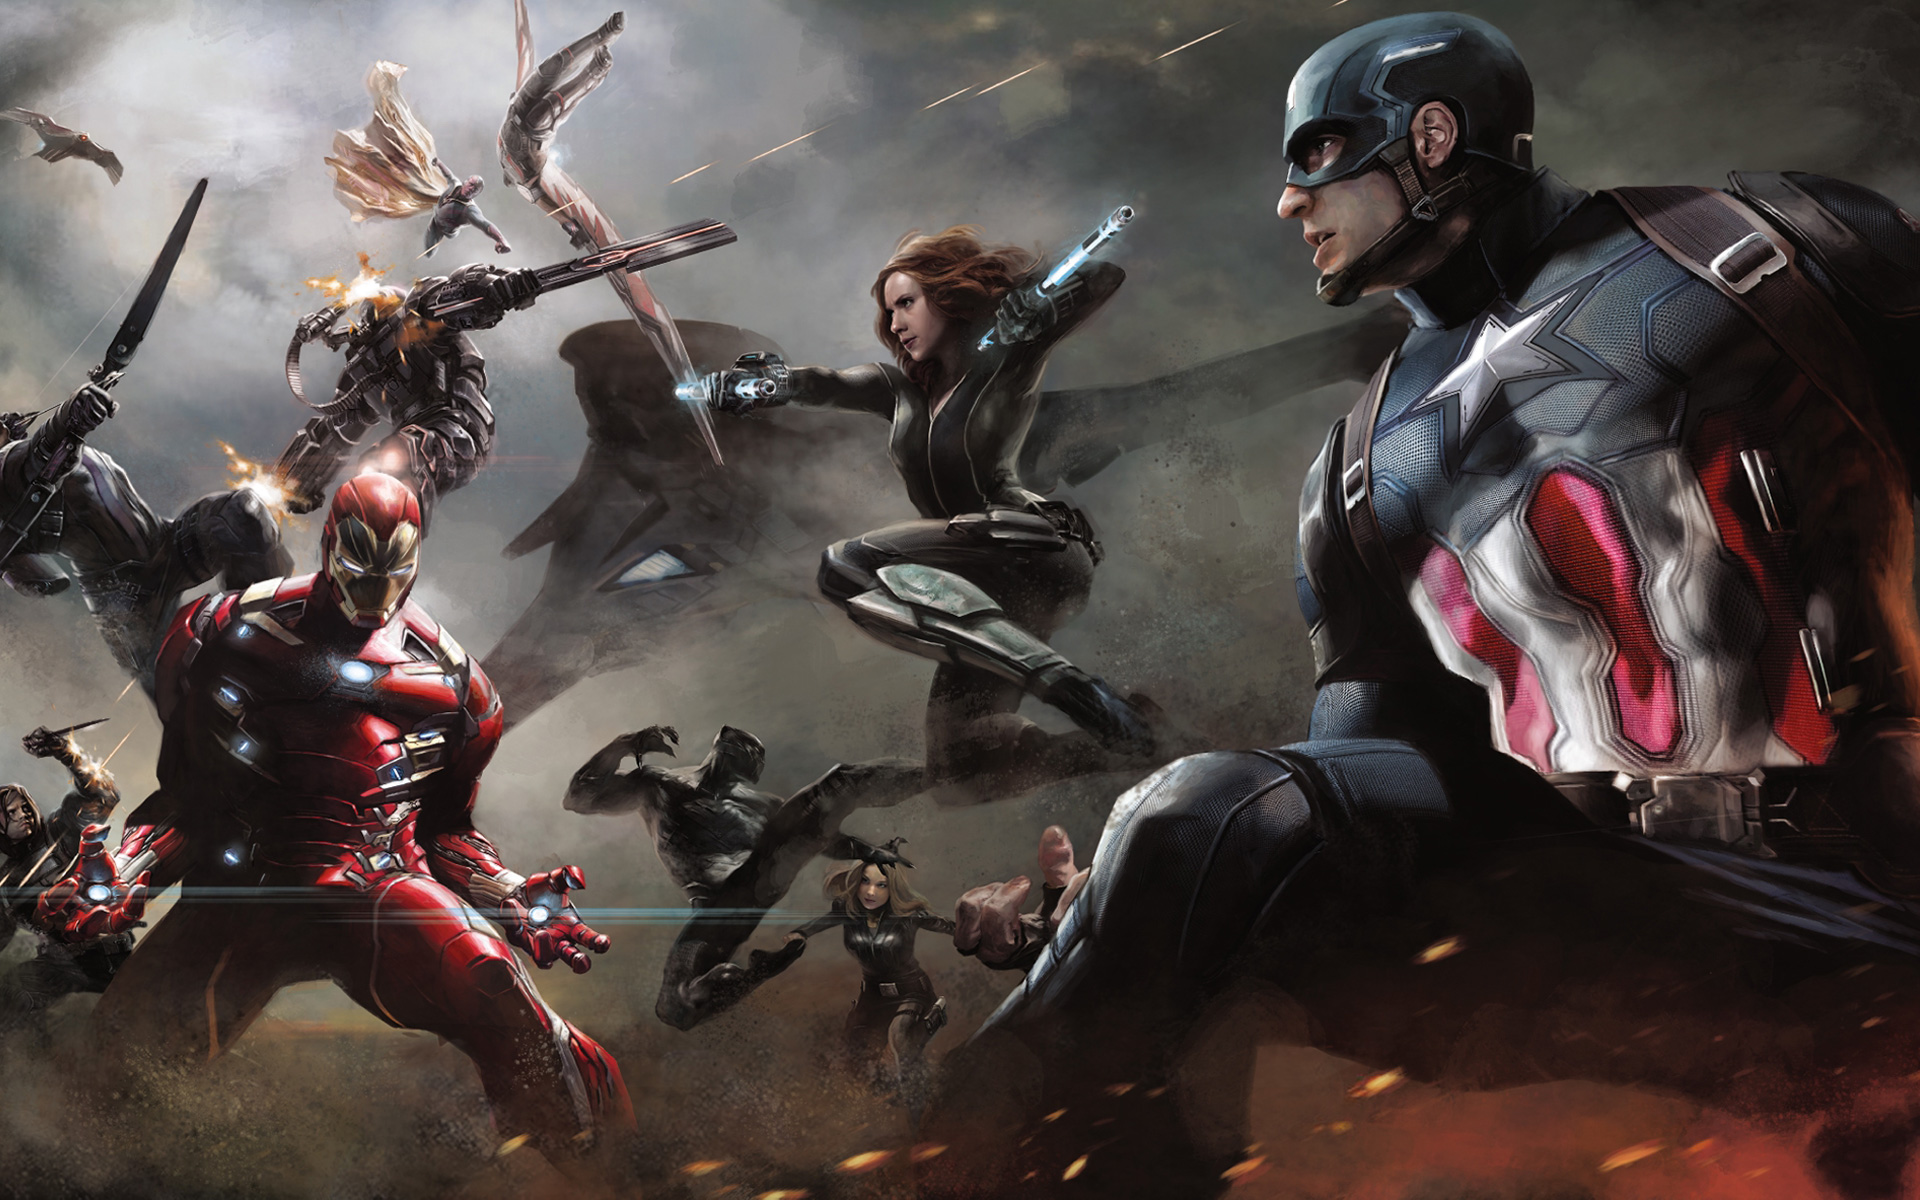 Artwork Captain America Civil War Wallpaper